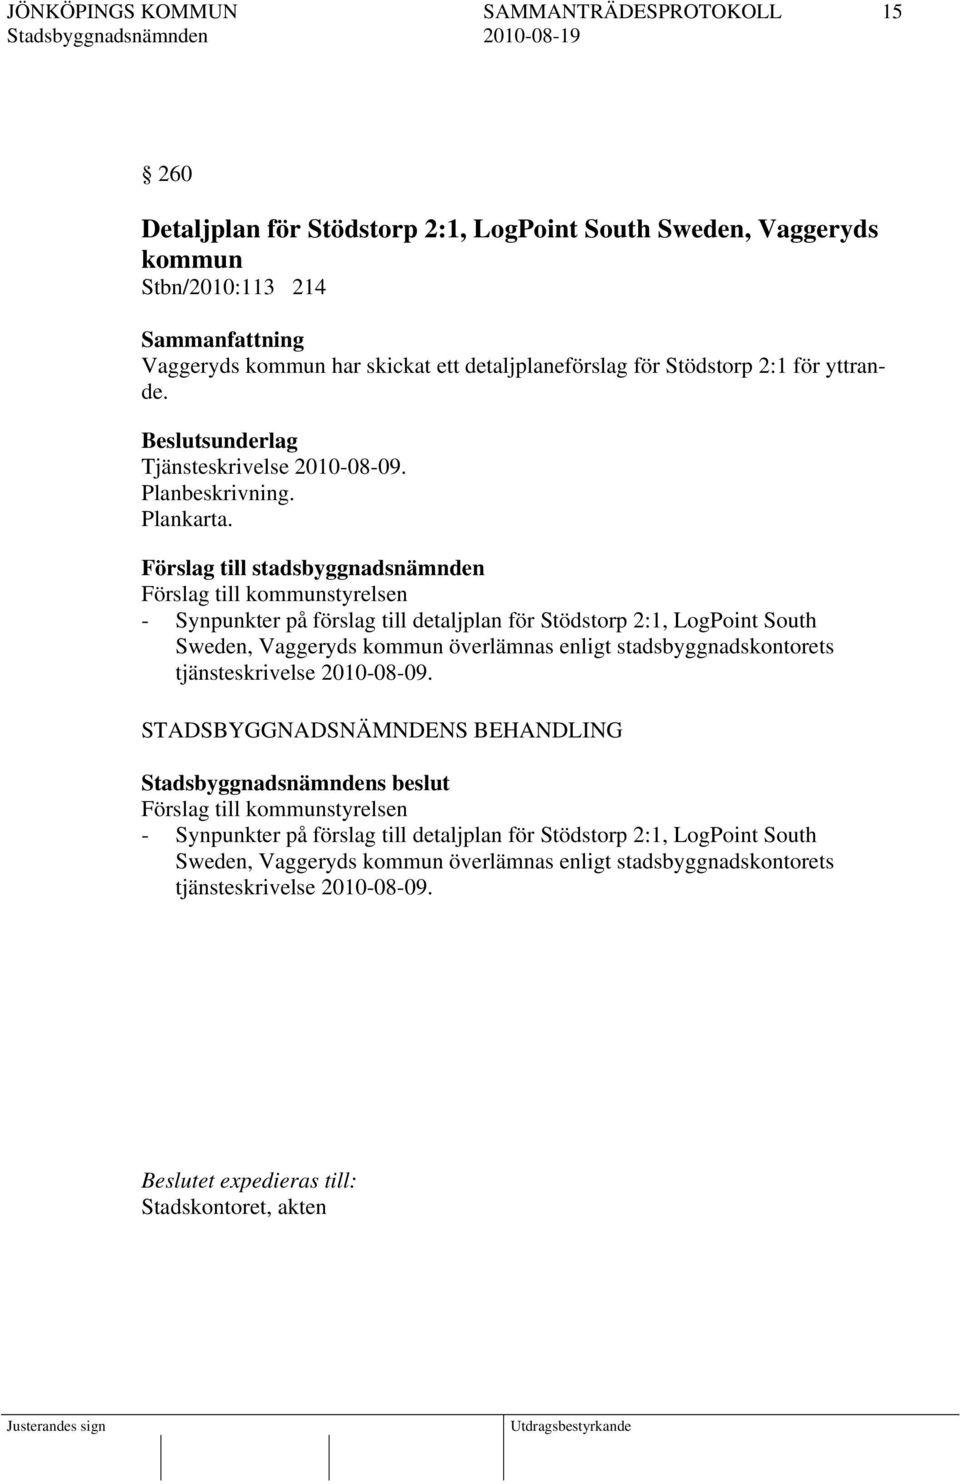 Förslag till stadsbyggnadsnämnden Förslag till kommunstyrelsen - Synpunkter på förslag till detaljplan för Stödstorp 2:1, LogPoint South Sweden, Vaggeryds kommun överlämnas enligt